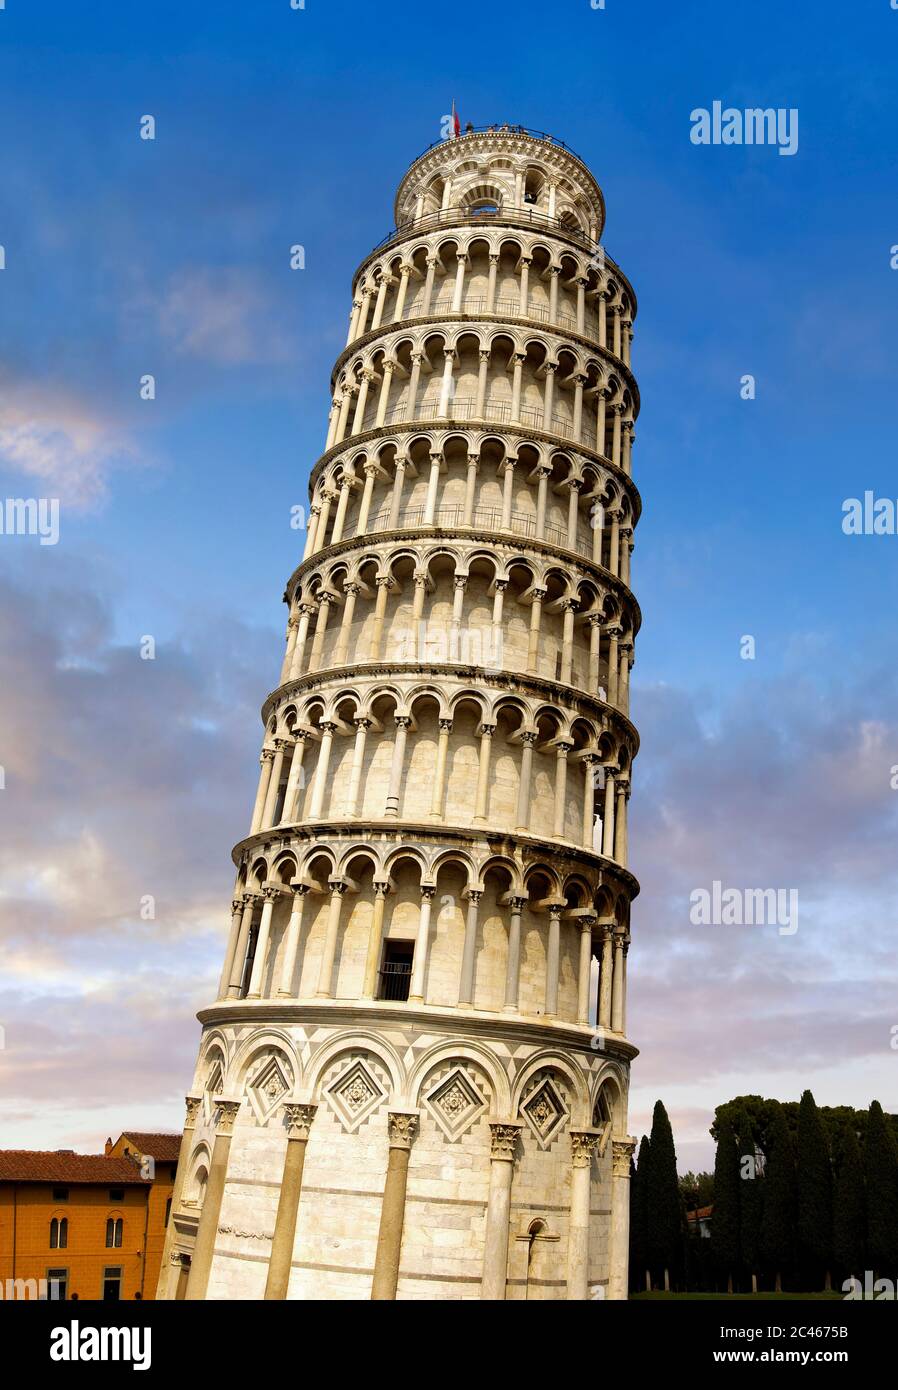 Vue sur la Tour de Pise, la Tour de la cloche, Piazza del Miracoli , Pise, Italie Banque D'Images